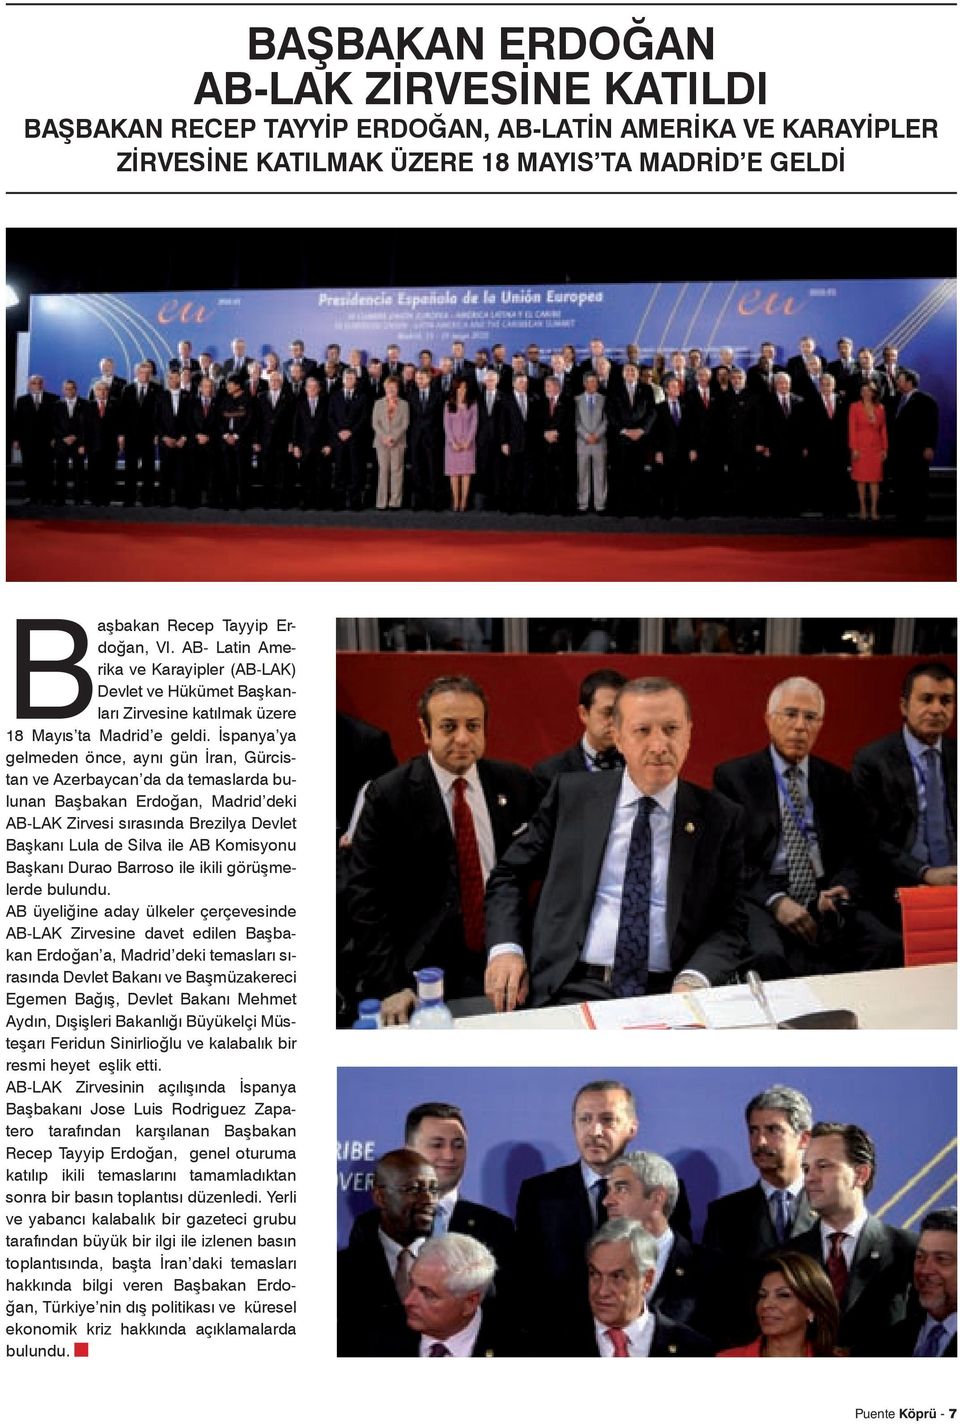 İspanya ya gelmeden önce, aynı gün İran, Gürcistan ve Azerbaycan da da temaslarda bulunan Başbakan Erdoğan, Madrid deki AB-LAK Zirvesi sırasında Brezilya Devlet Başkanı Lula de Silva ile AB Komisyonu